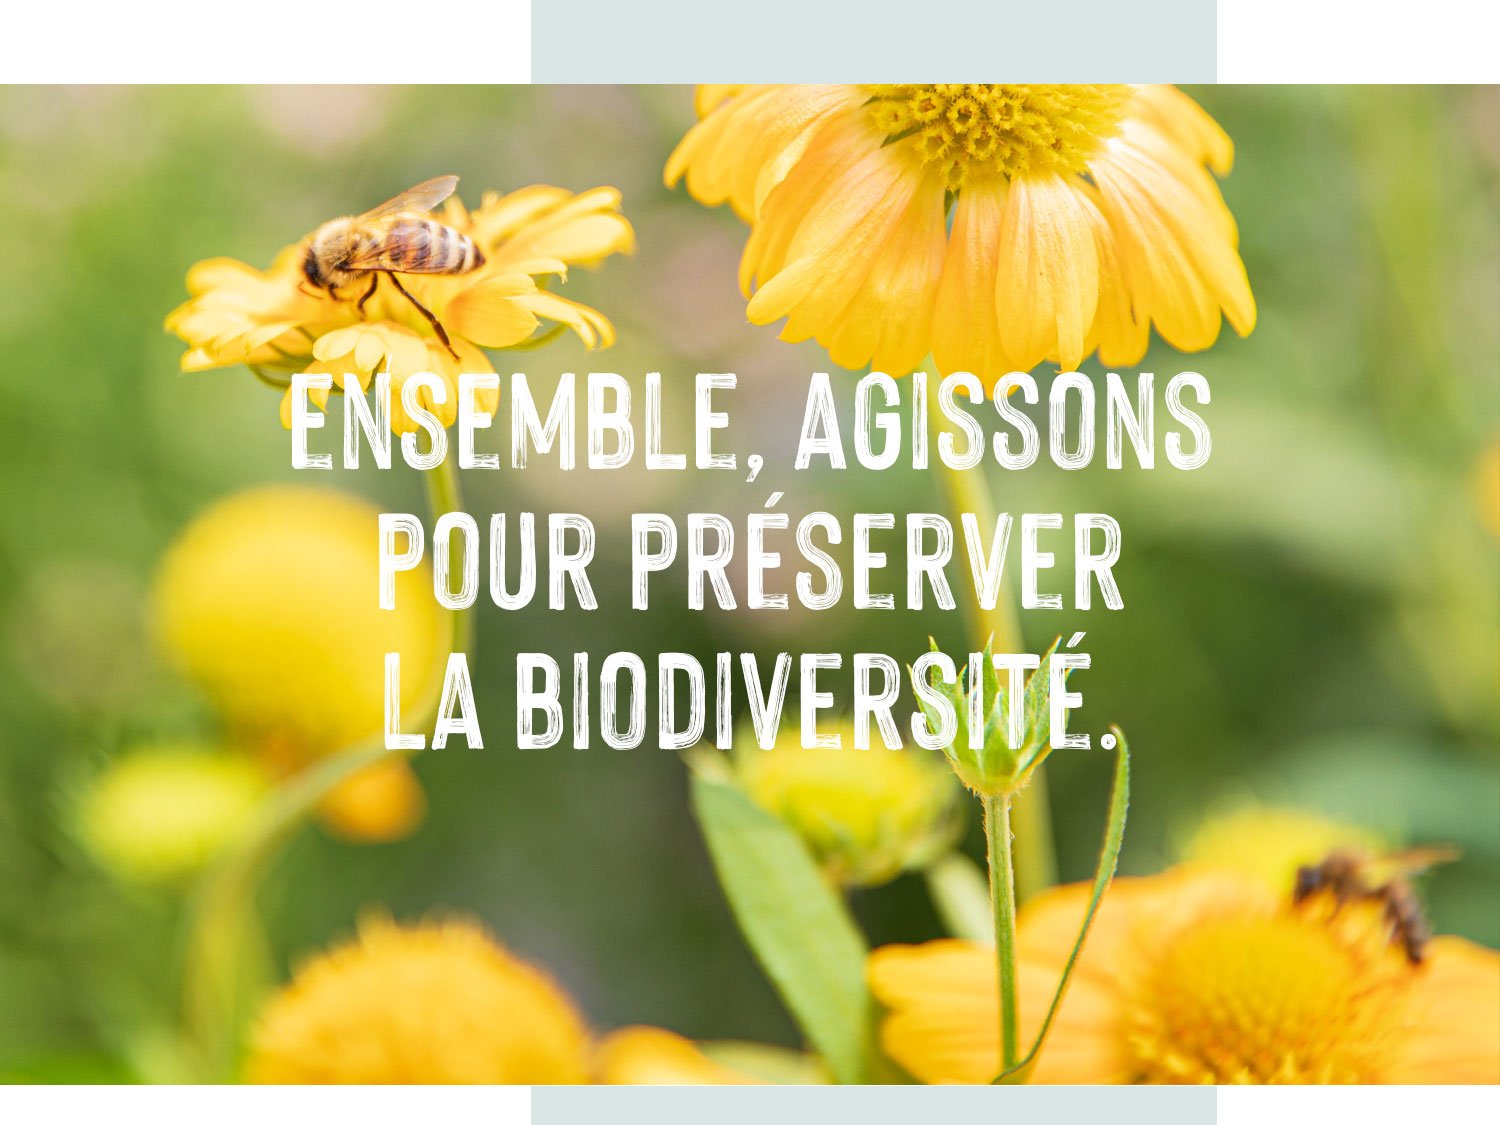 engagement en faveur de la biodiversité